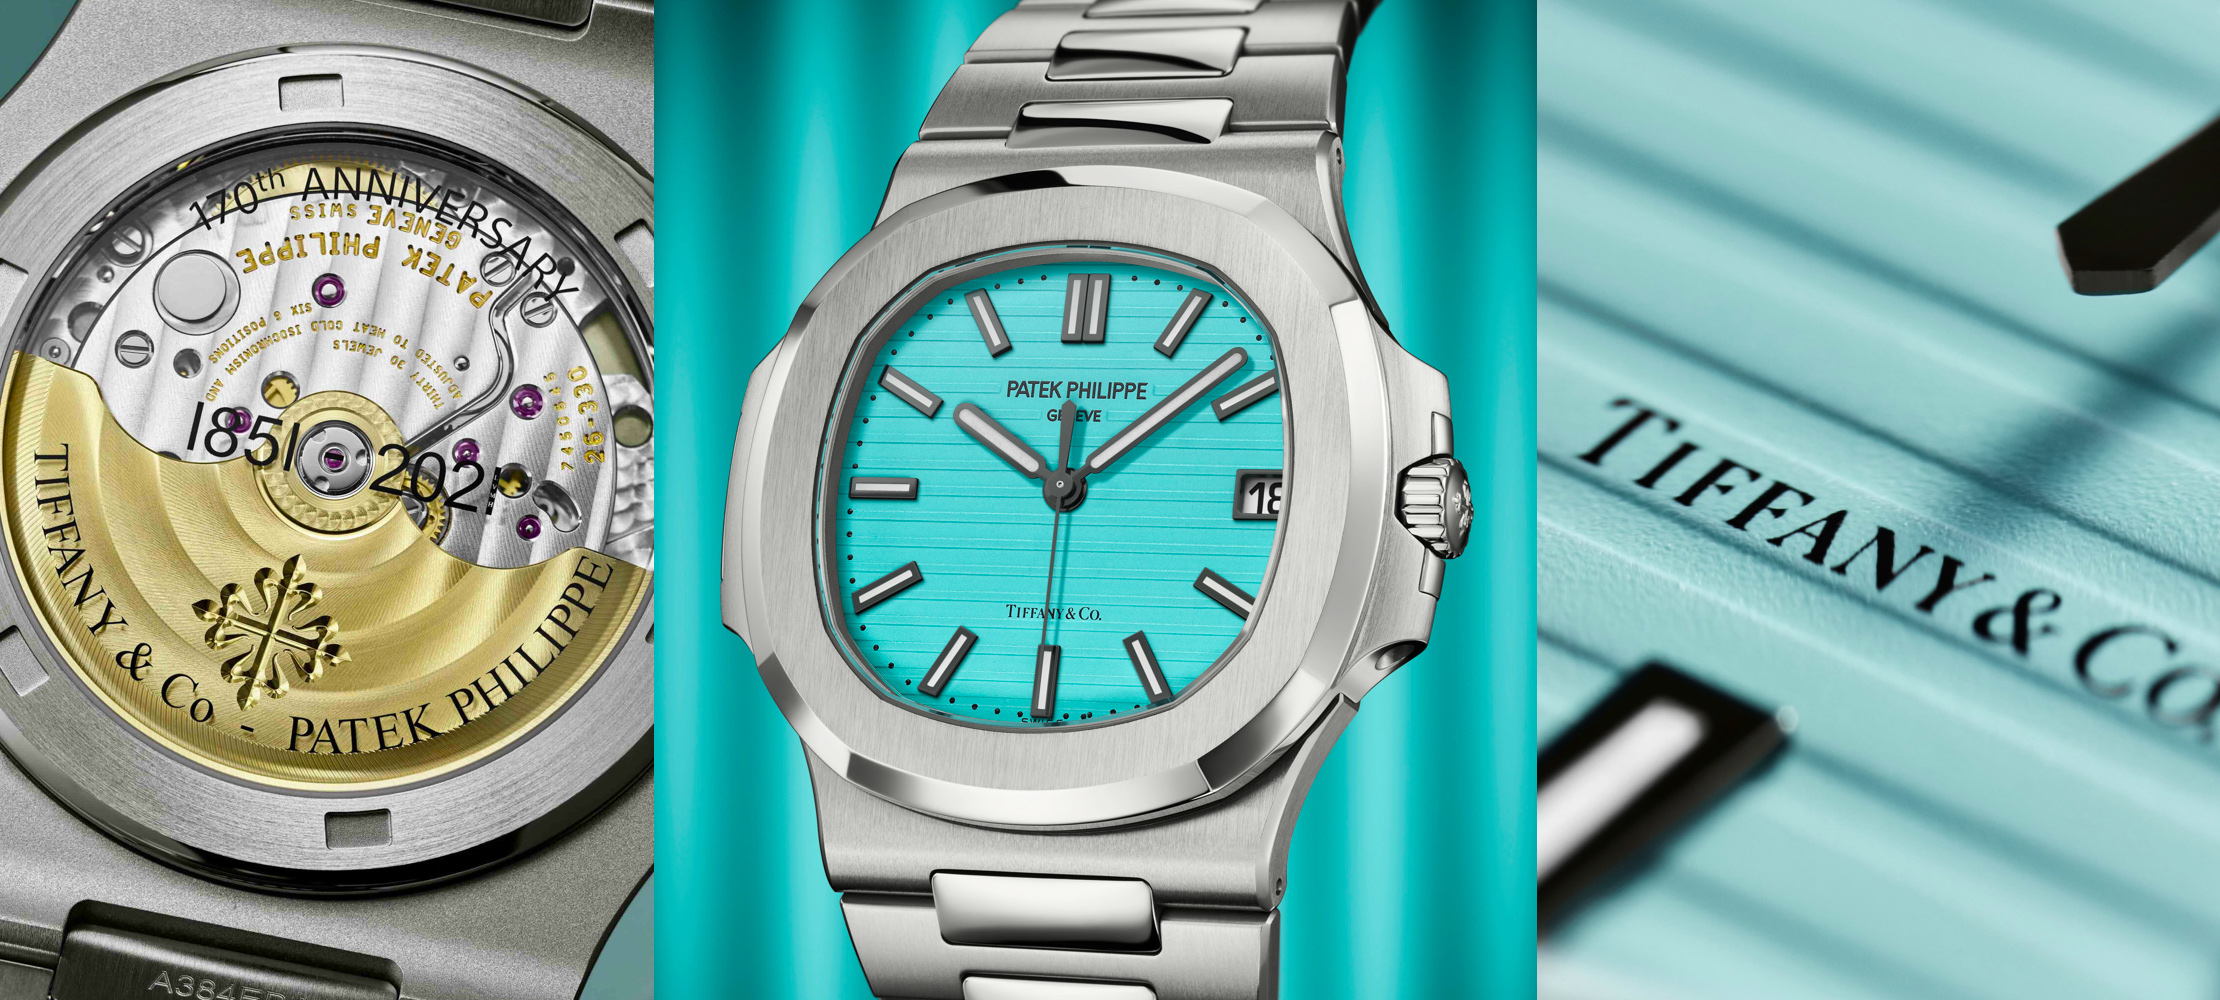 La montre Replique Patek Philippe Nautilus 5711/1A-018 « Tiffany & Co. » fait ses débuts en acier